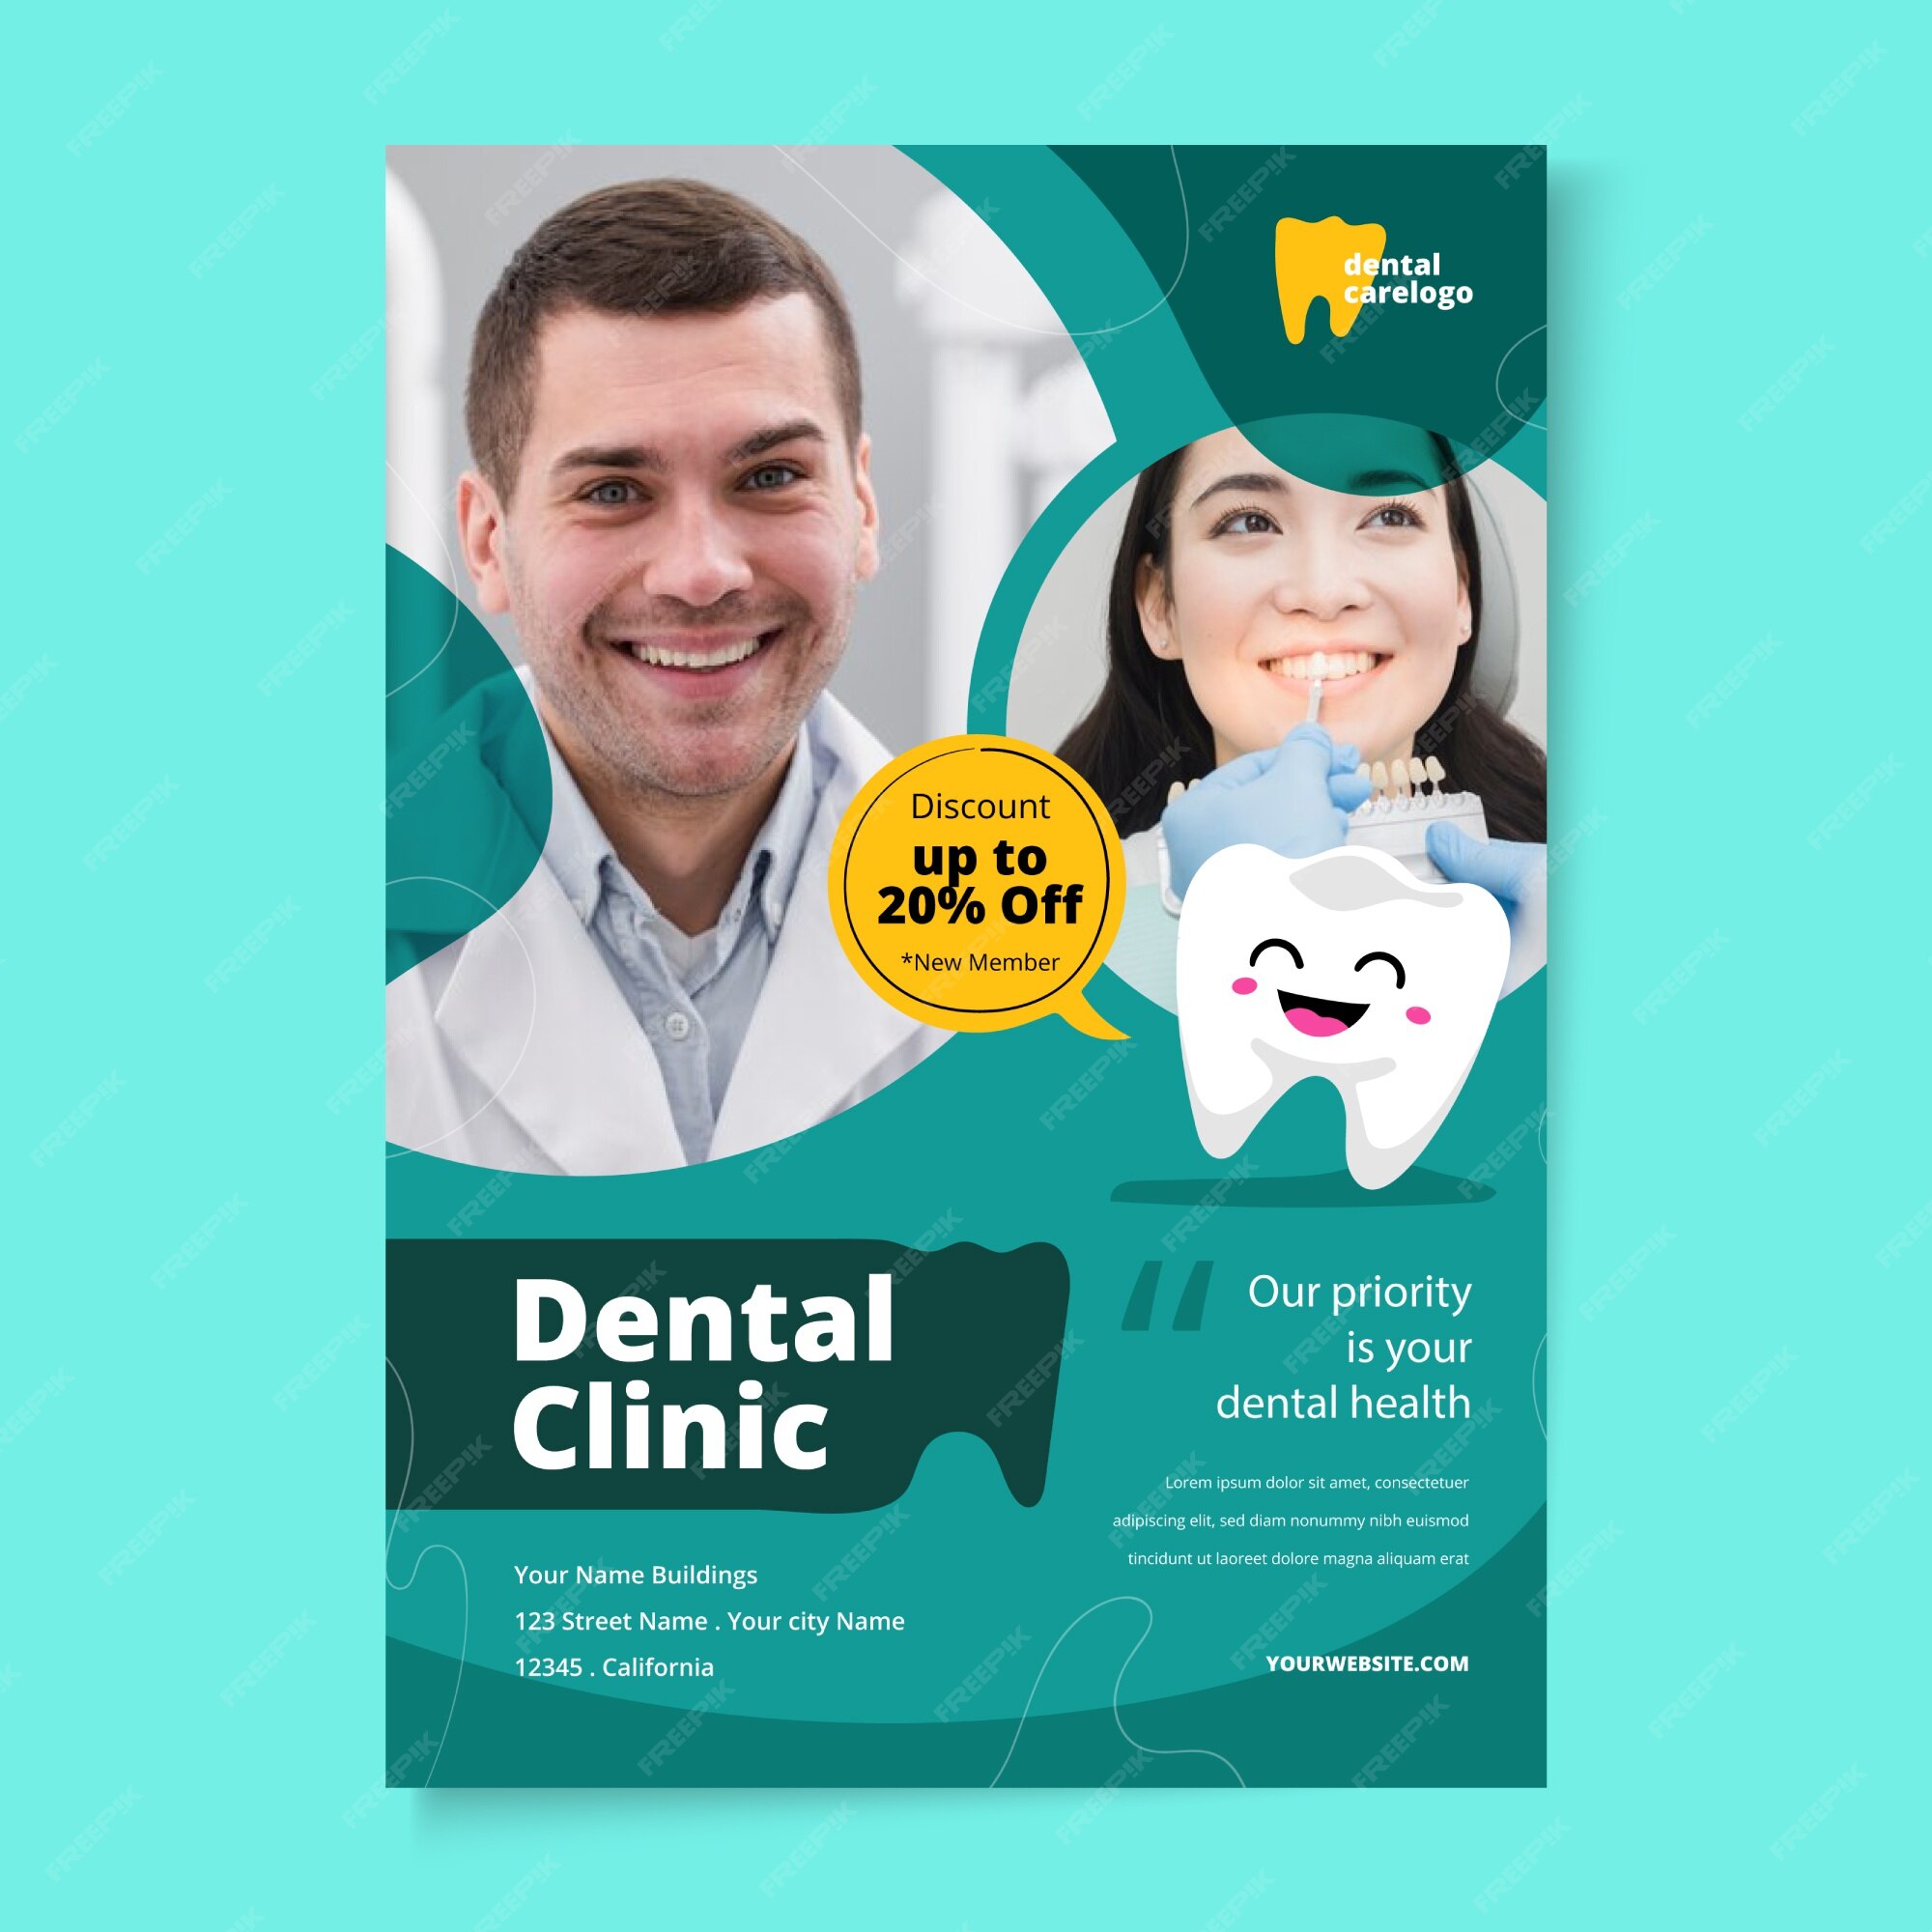 Dentist Flyer Images - Free Download on Freepik